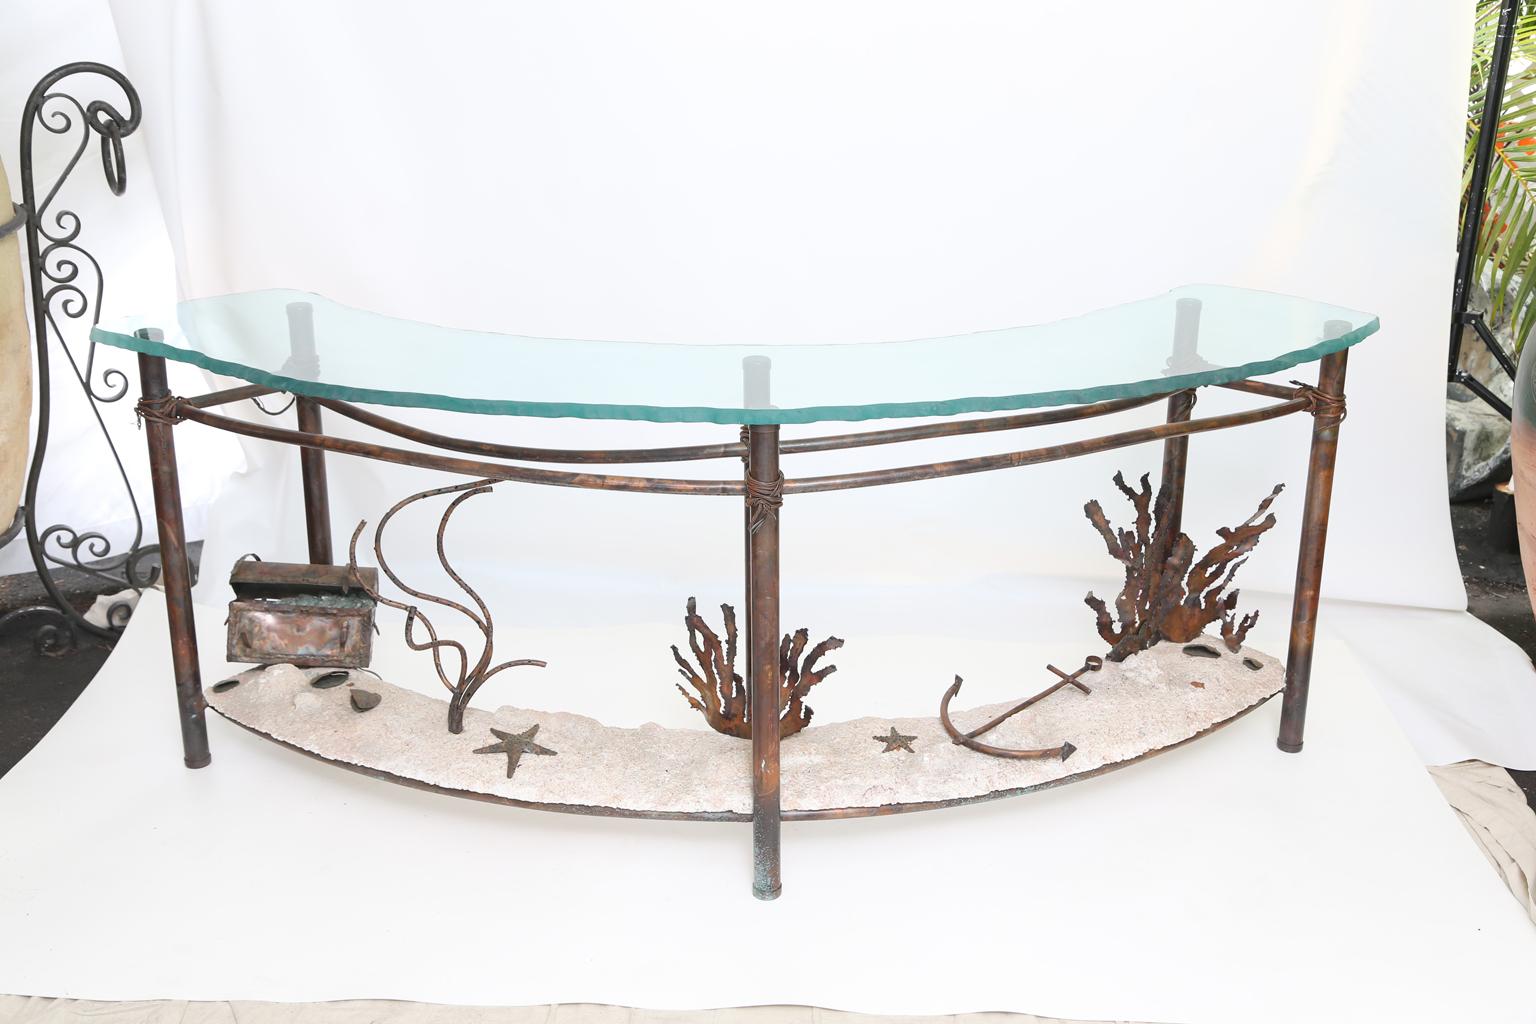 Table console Demilune de l'artiste Glen Mayo, avec son plateau semi-circulaire en verre de 1 pouce avec bord brut, sur une base en cuivre, les six pieds en fil de fer sont reliés par une étagère en béton léger 